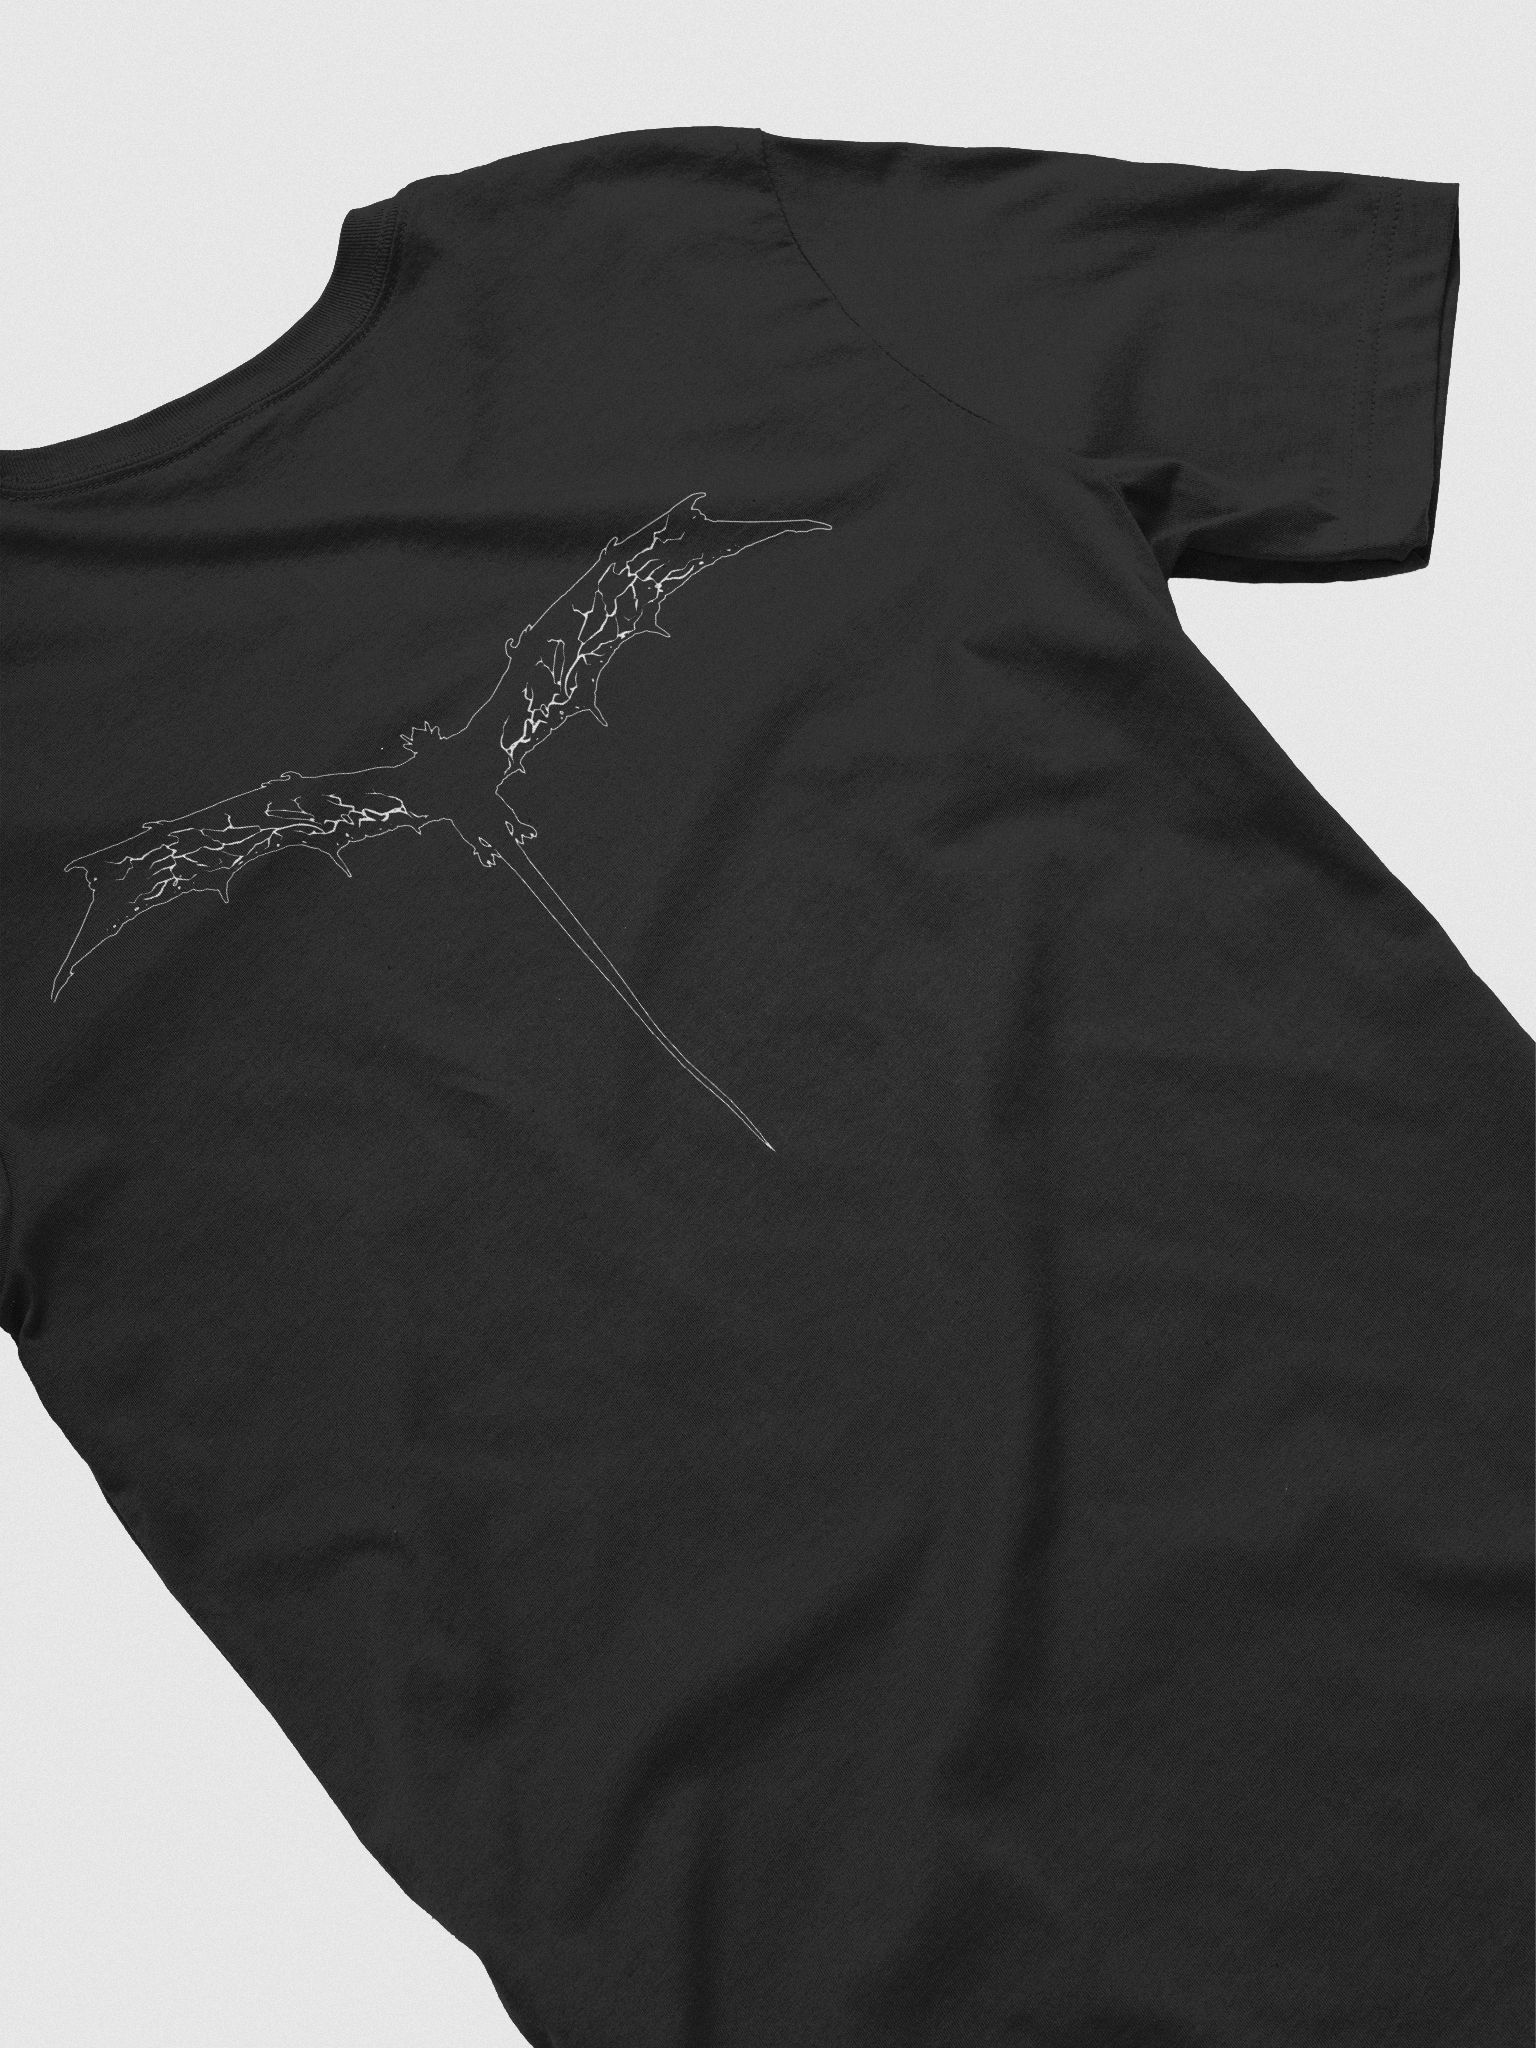 メンズLサイズ WYxBW T-SHIRT black - Tシャツ/カットソー(半袖/袖なし)